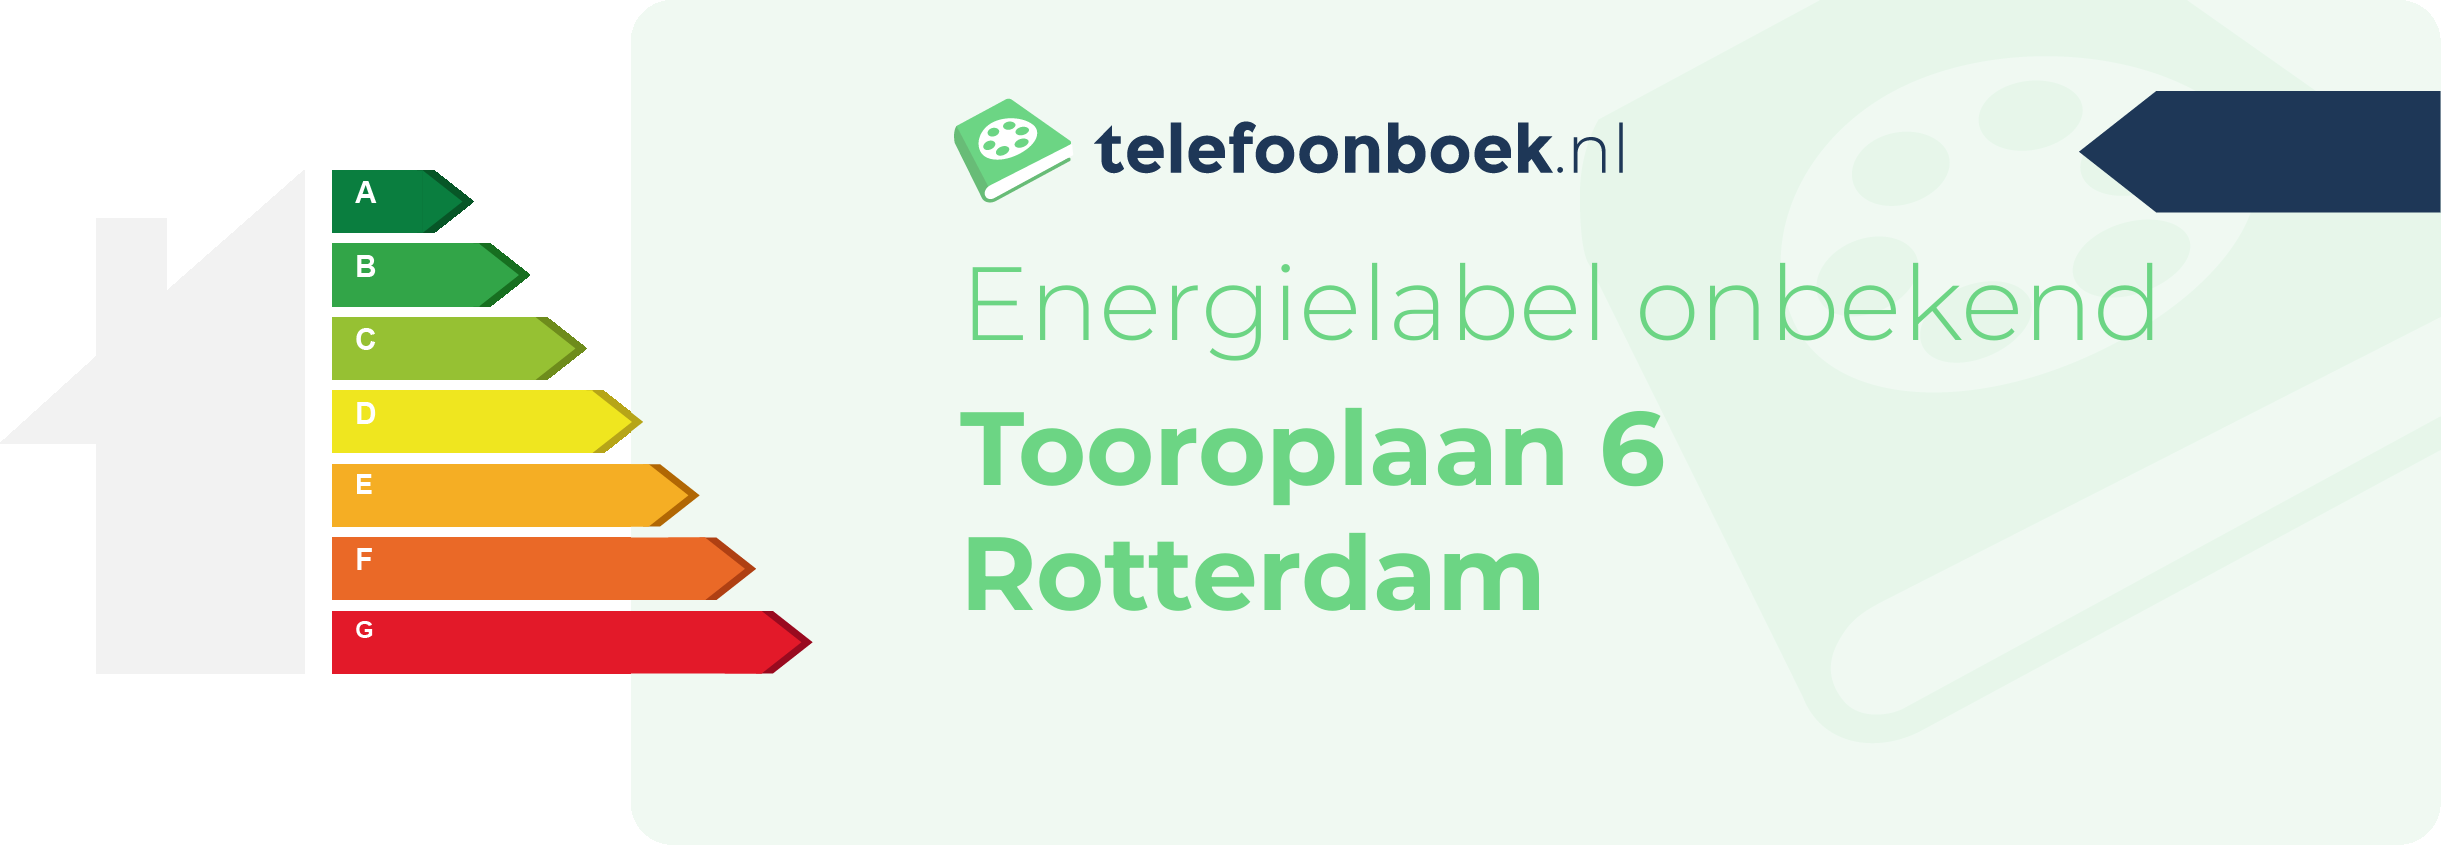 Energielabel Tooroplaan 6 Rotterdam